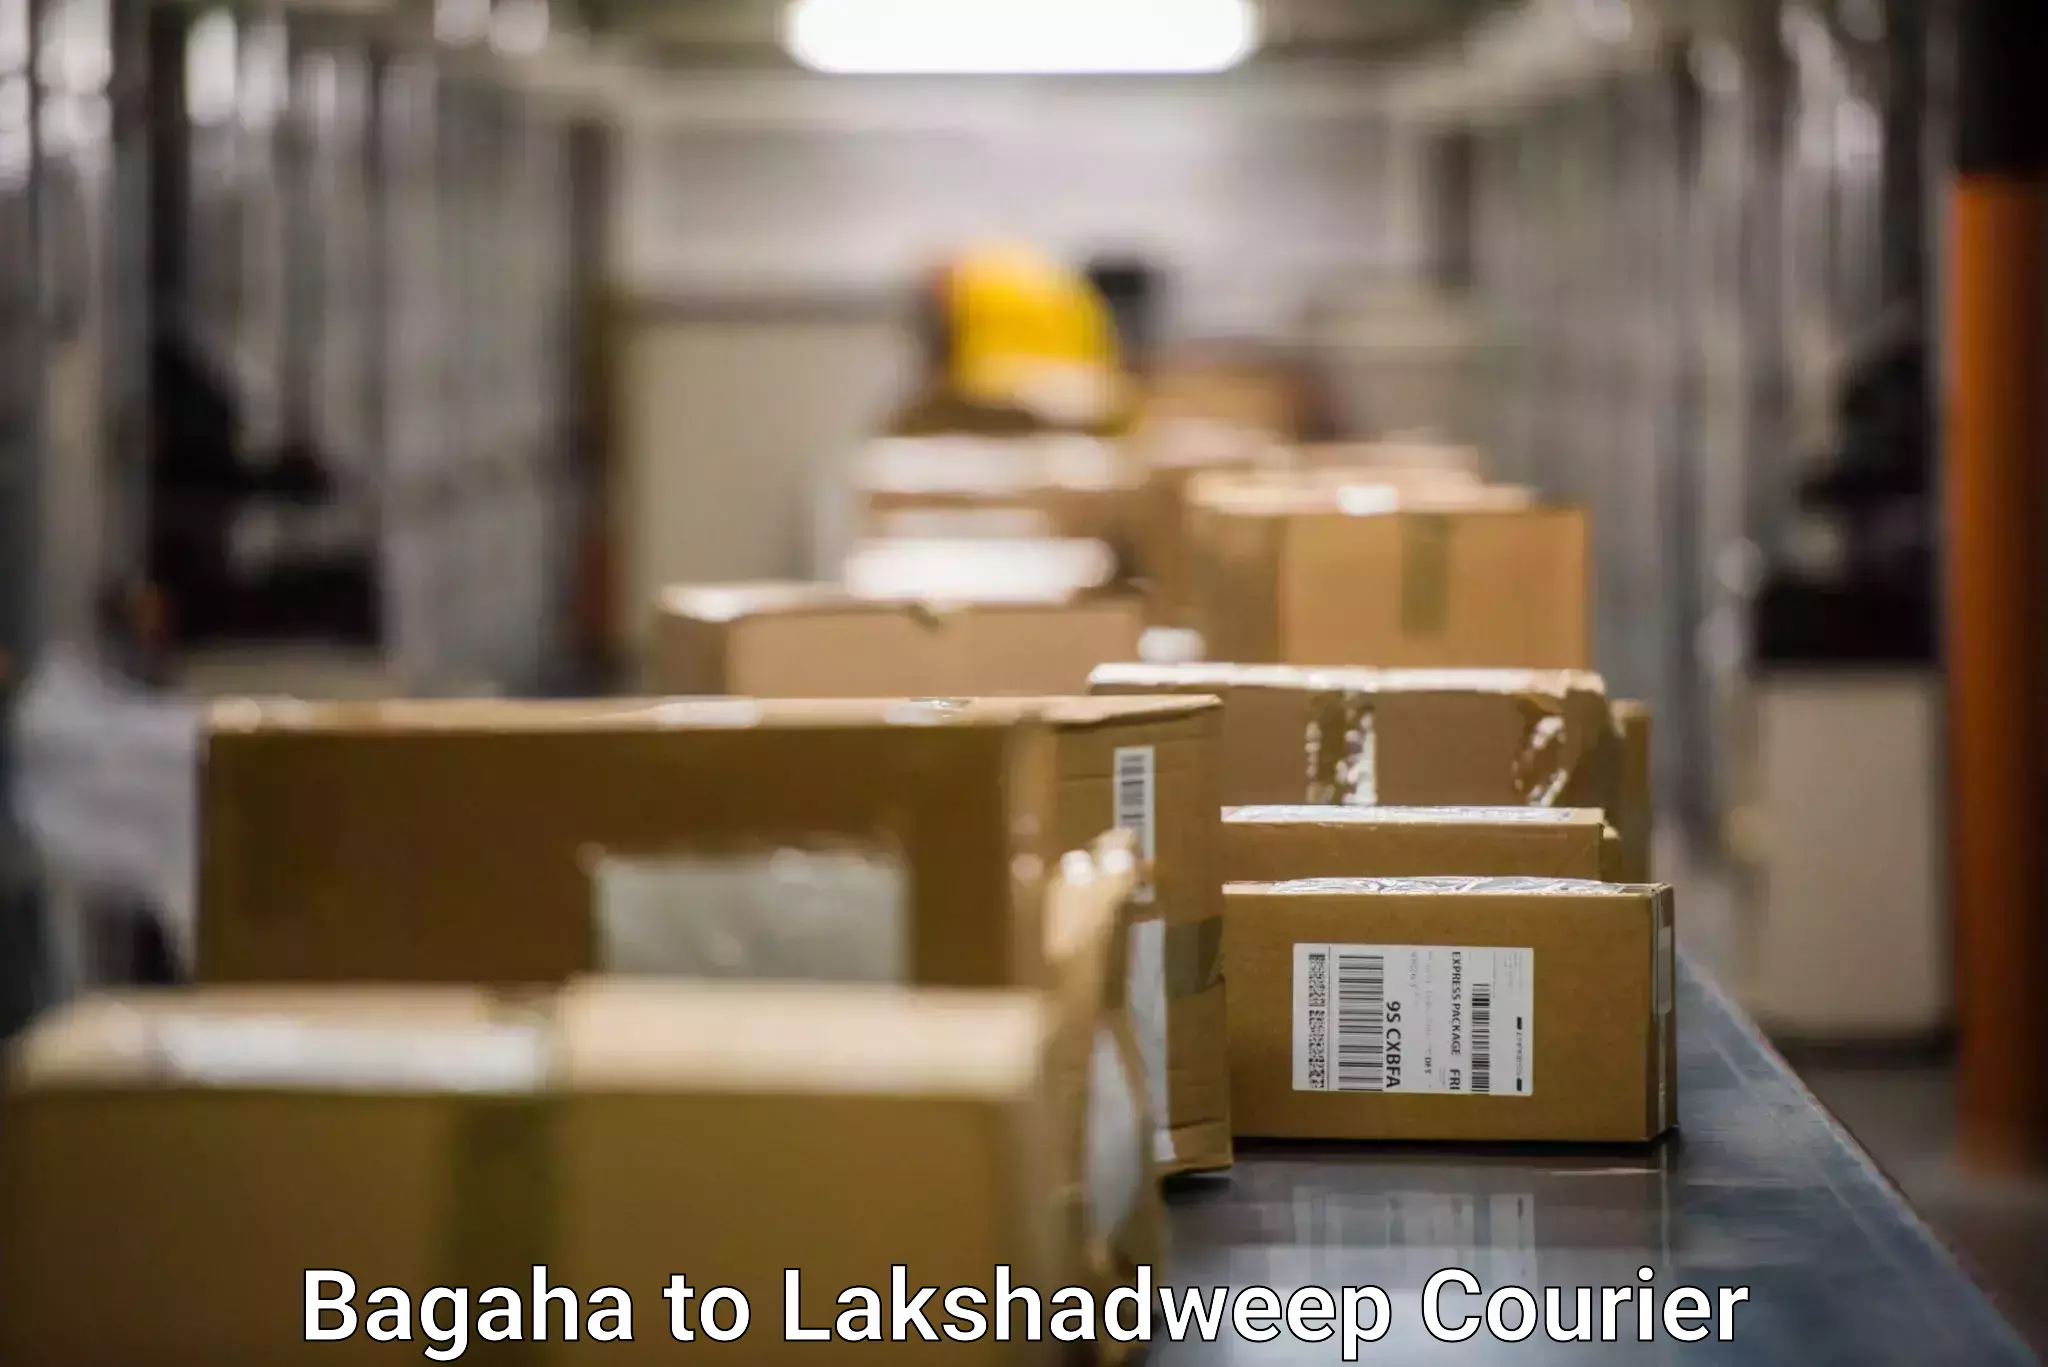 Customer-centric shipping Bagaha to Lakshadweep